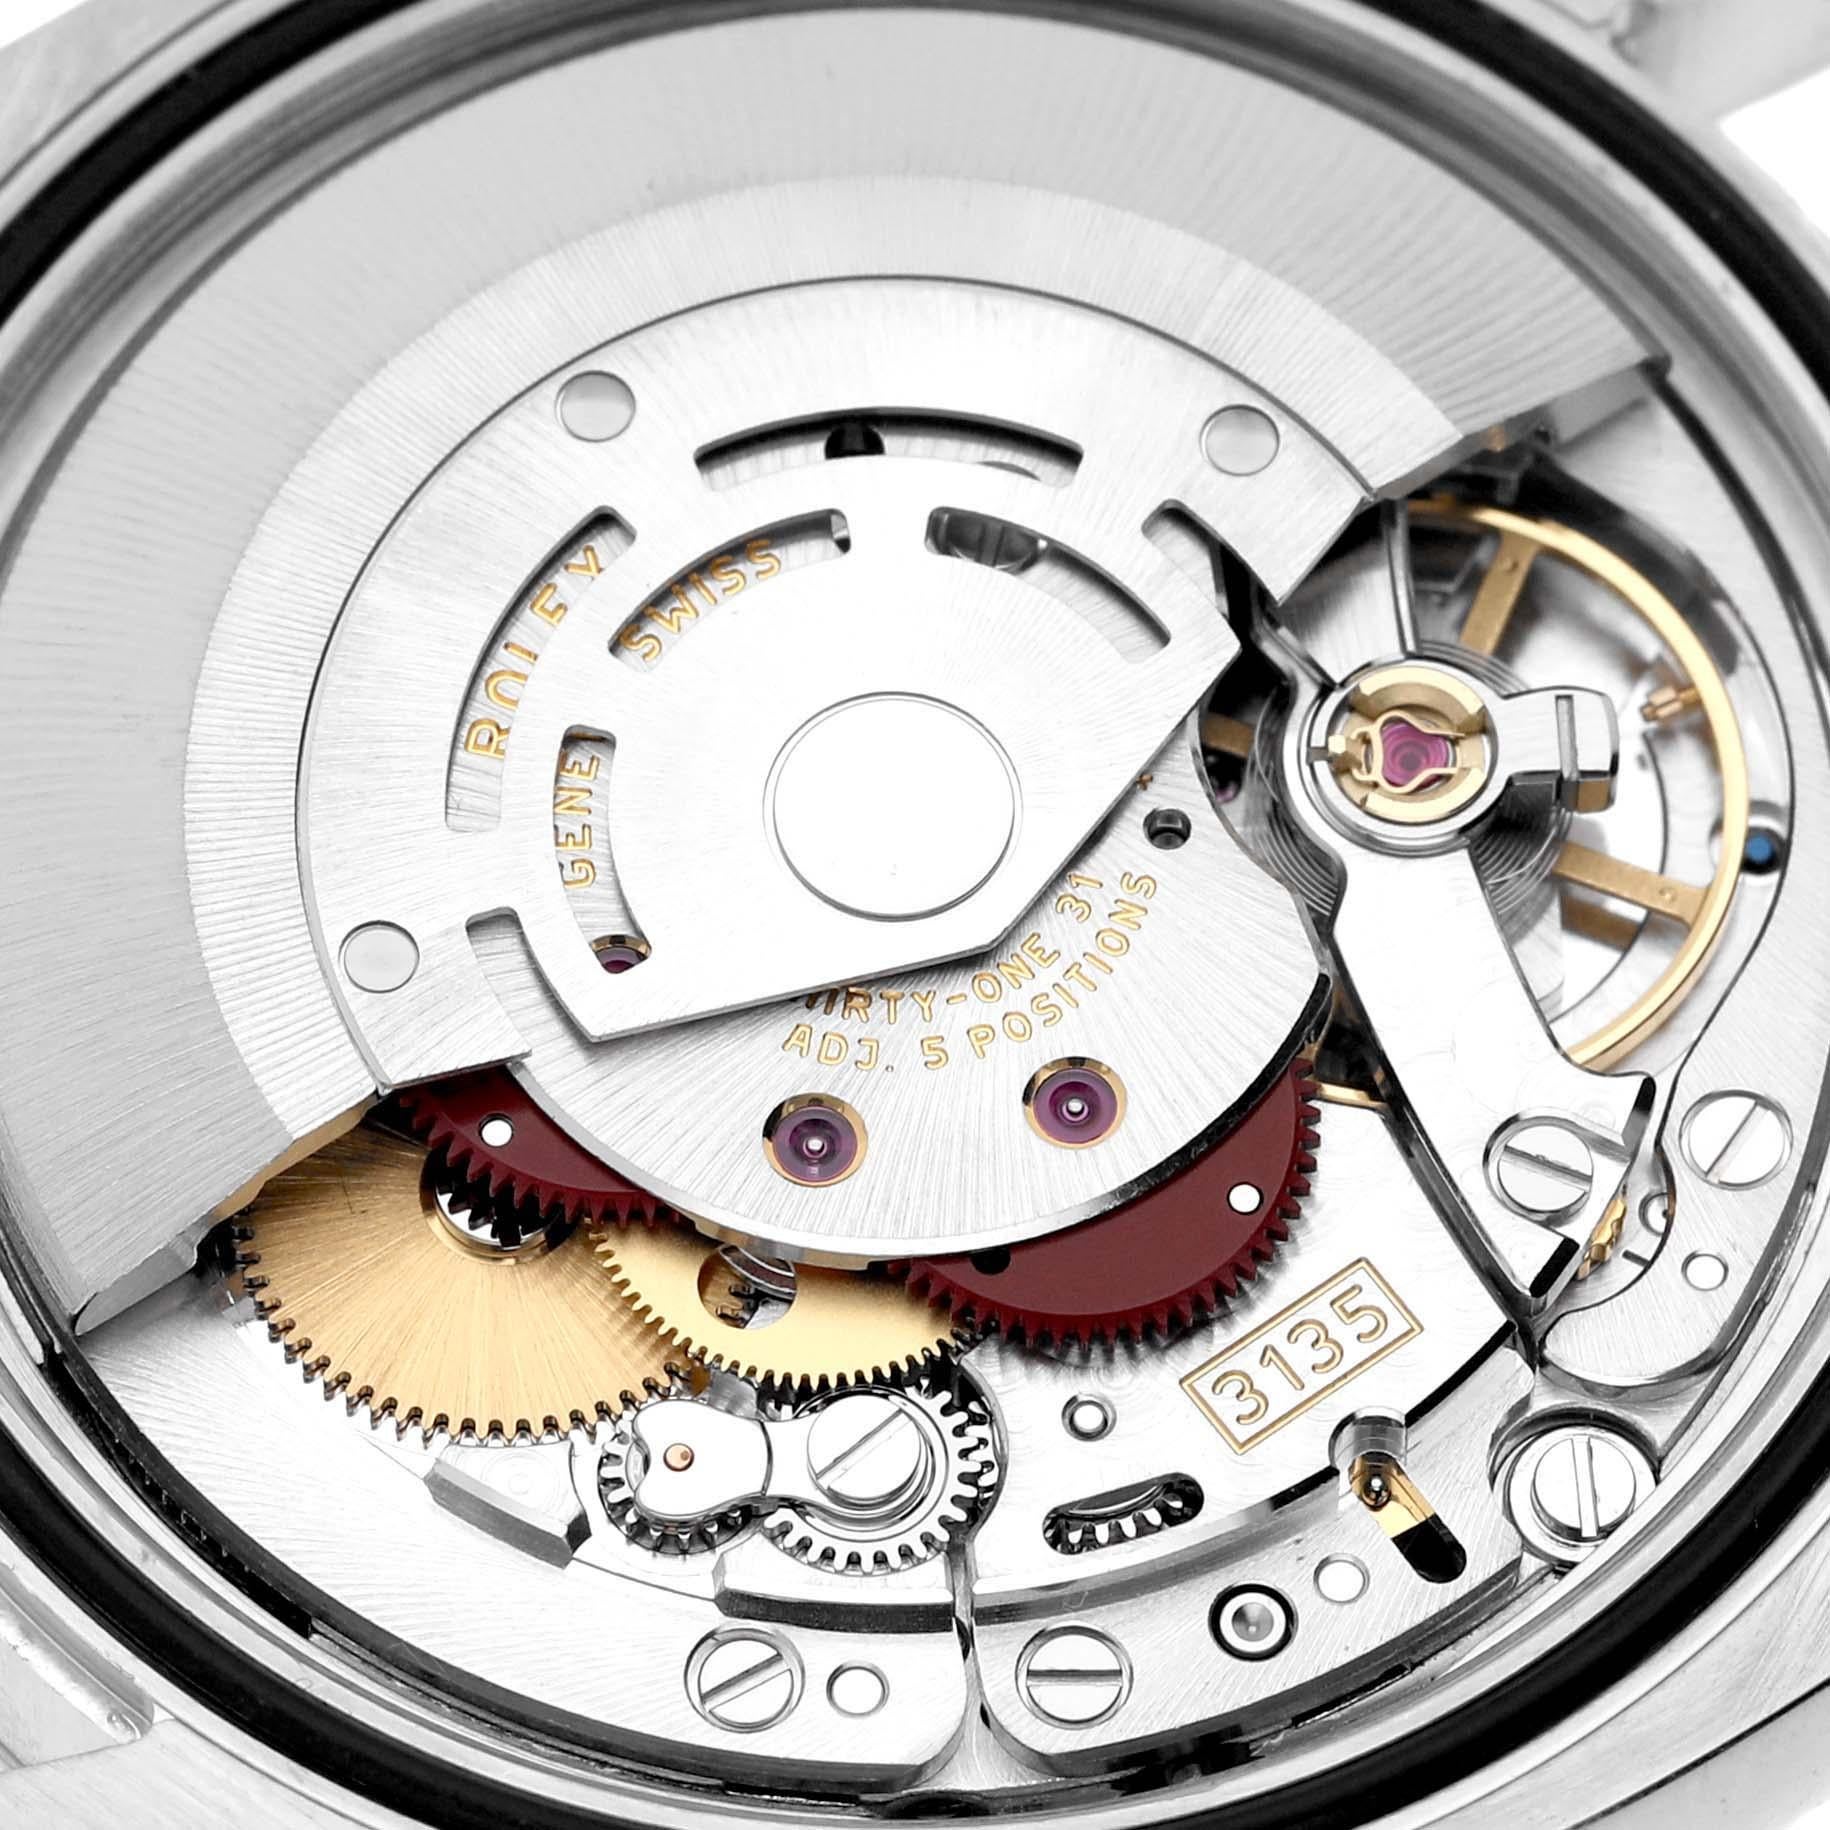 Rolex Datejust Steel White Gold Silver Roman Dial Mens Watch 116234. Mouvement à remontage automatique certifié officiellement chronomètre. Boîtier en acier inoxydable de 36.0 mm de diamètre.  Logo Rolex sur une couronne. Lunette cannelée en or